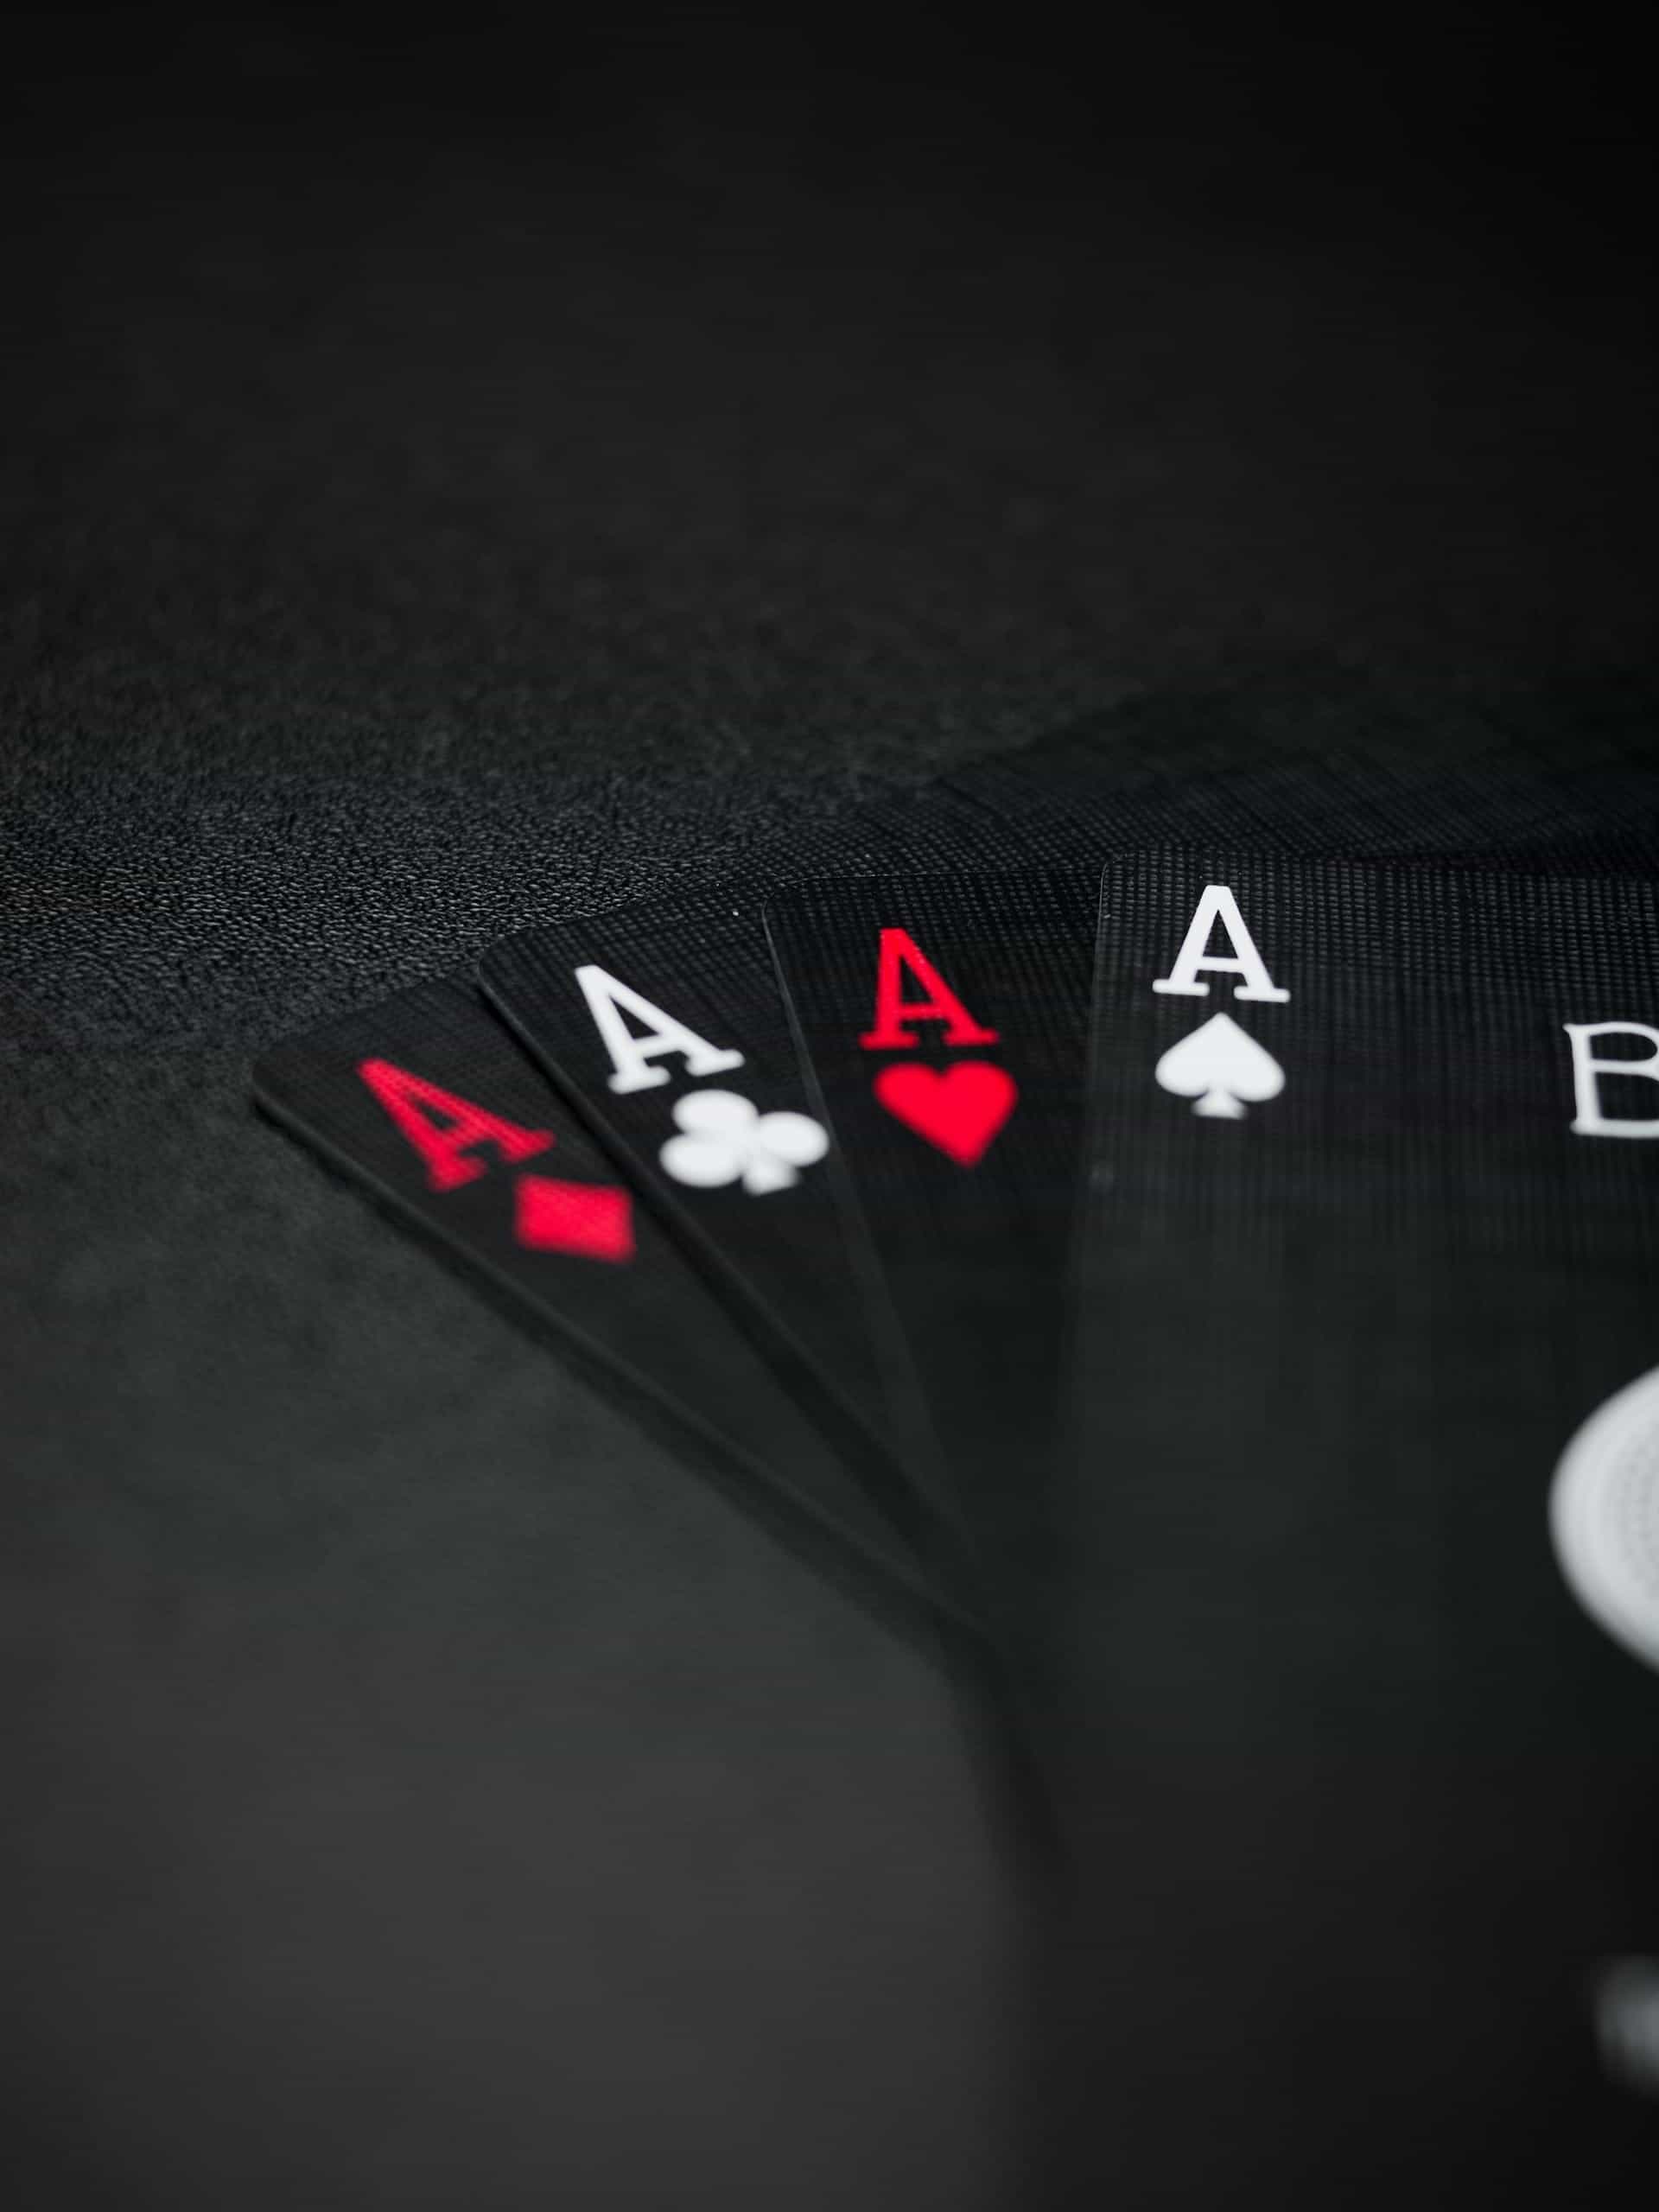 4 ace di tangan kartu.